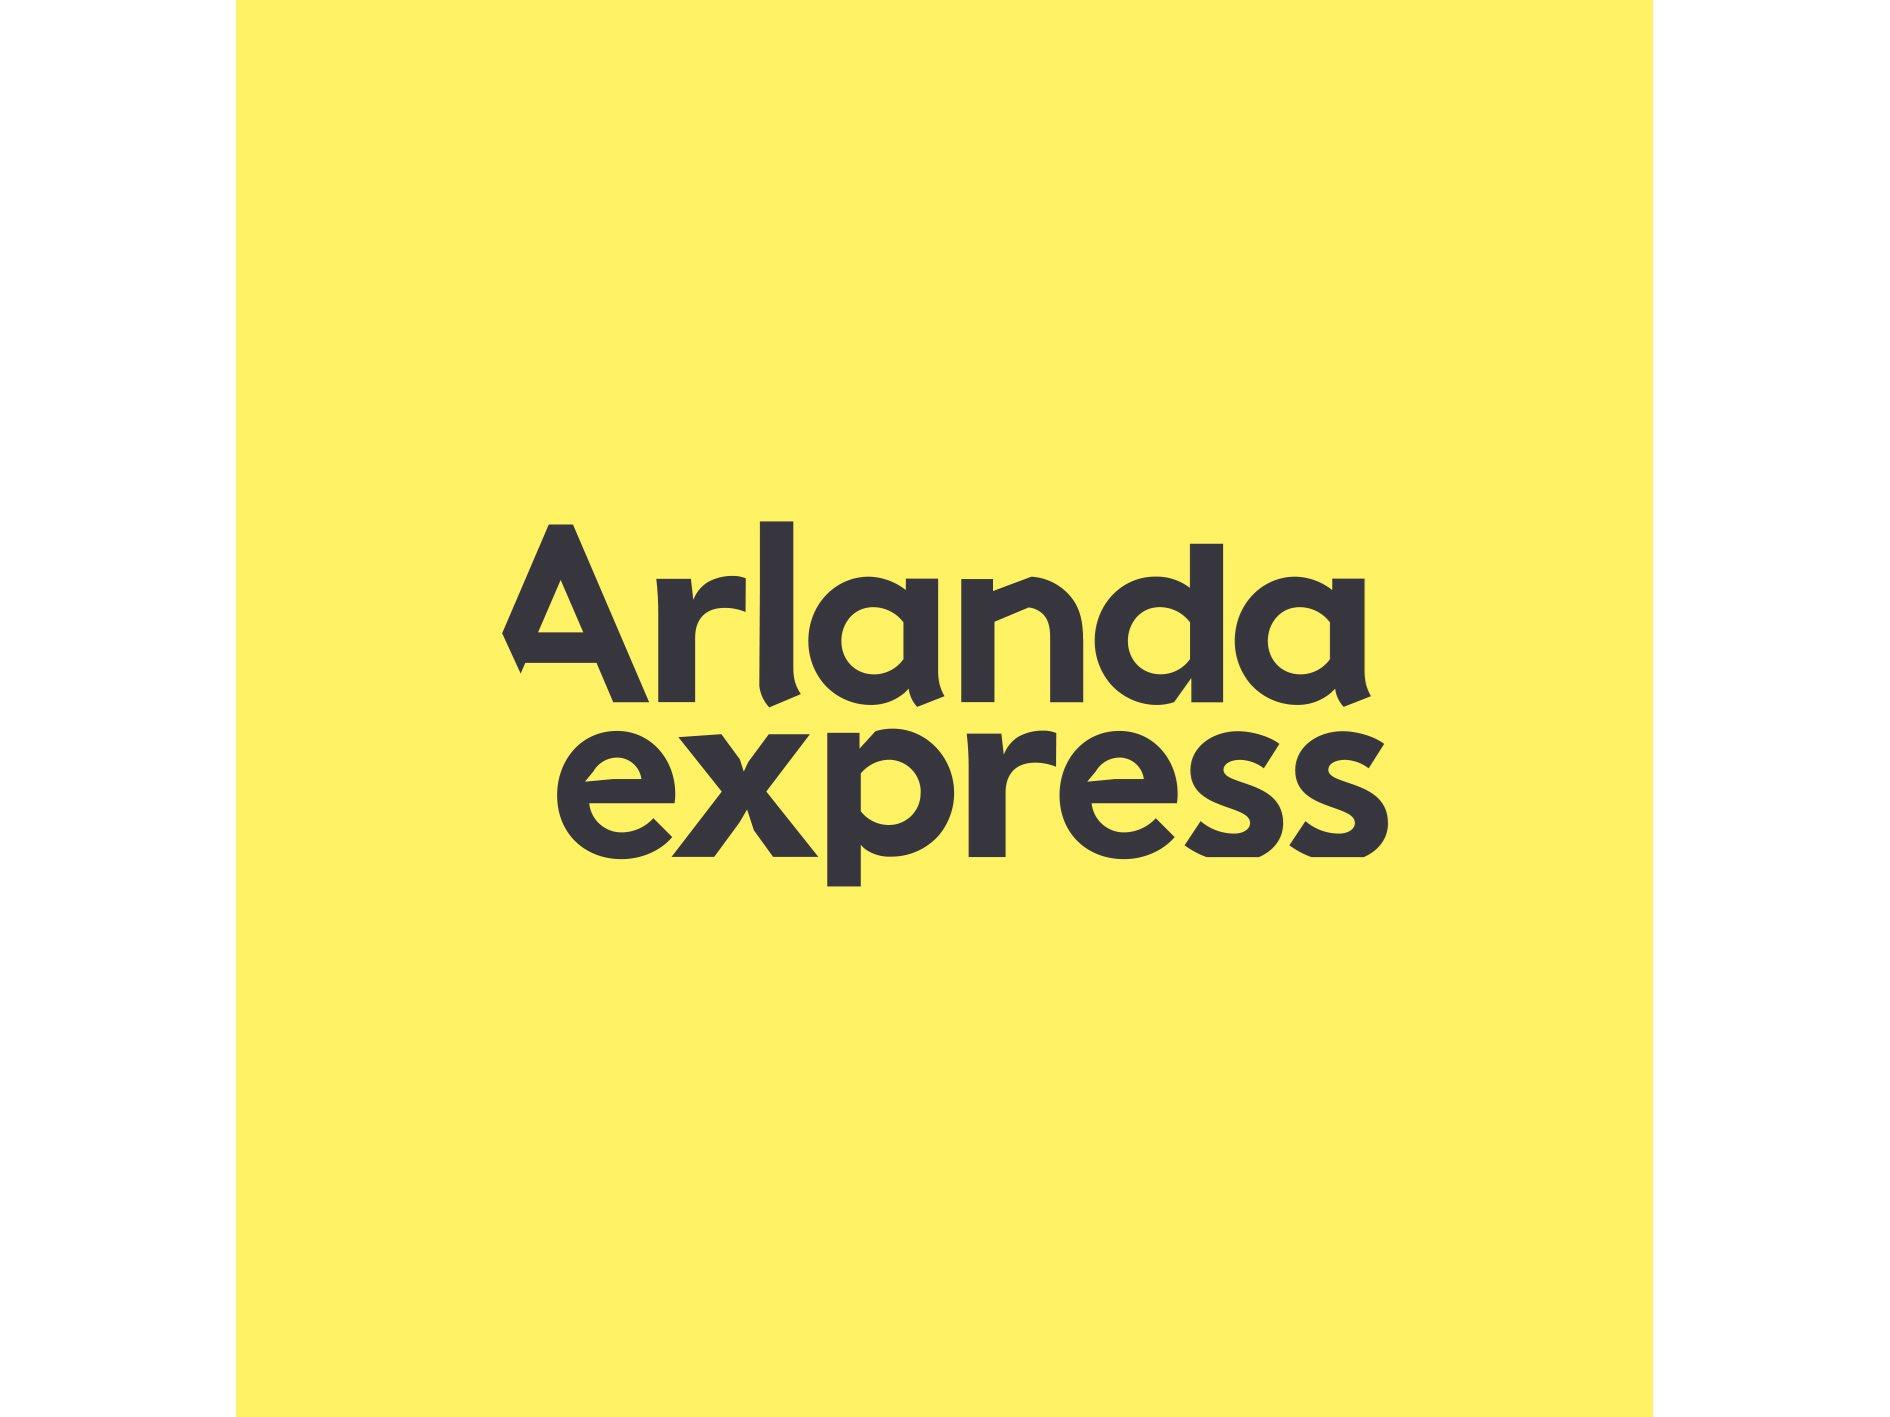 Arlanda express